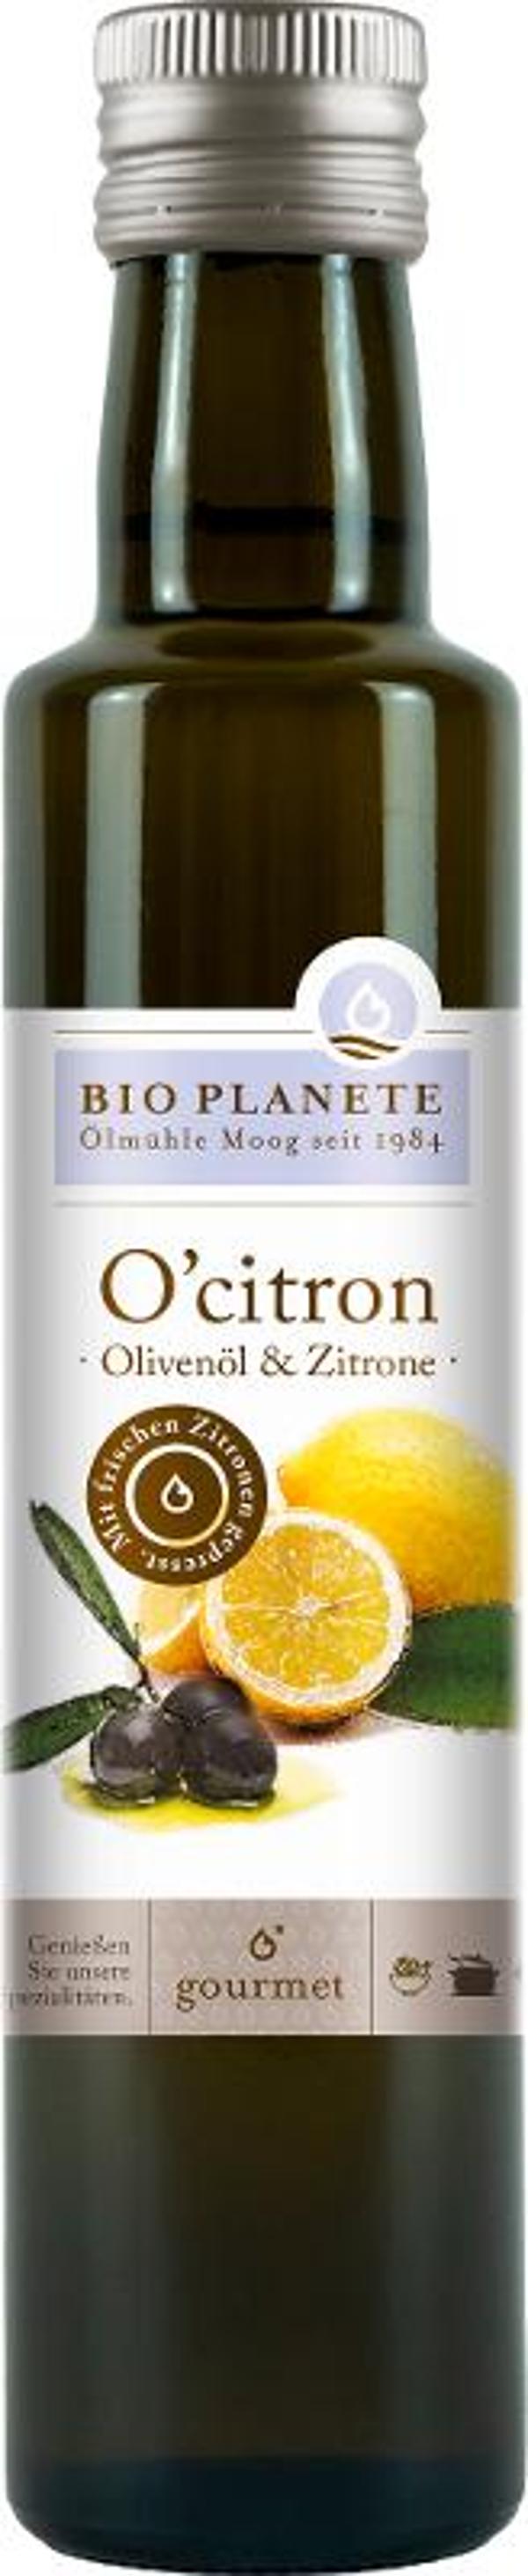 Produktfoto zu Olivenöl oïcitron